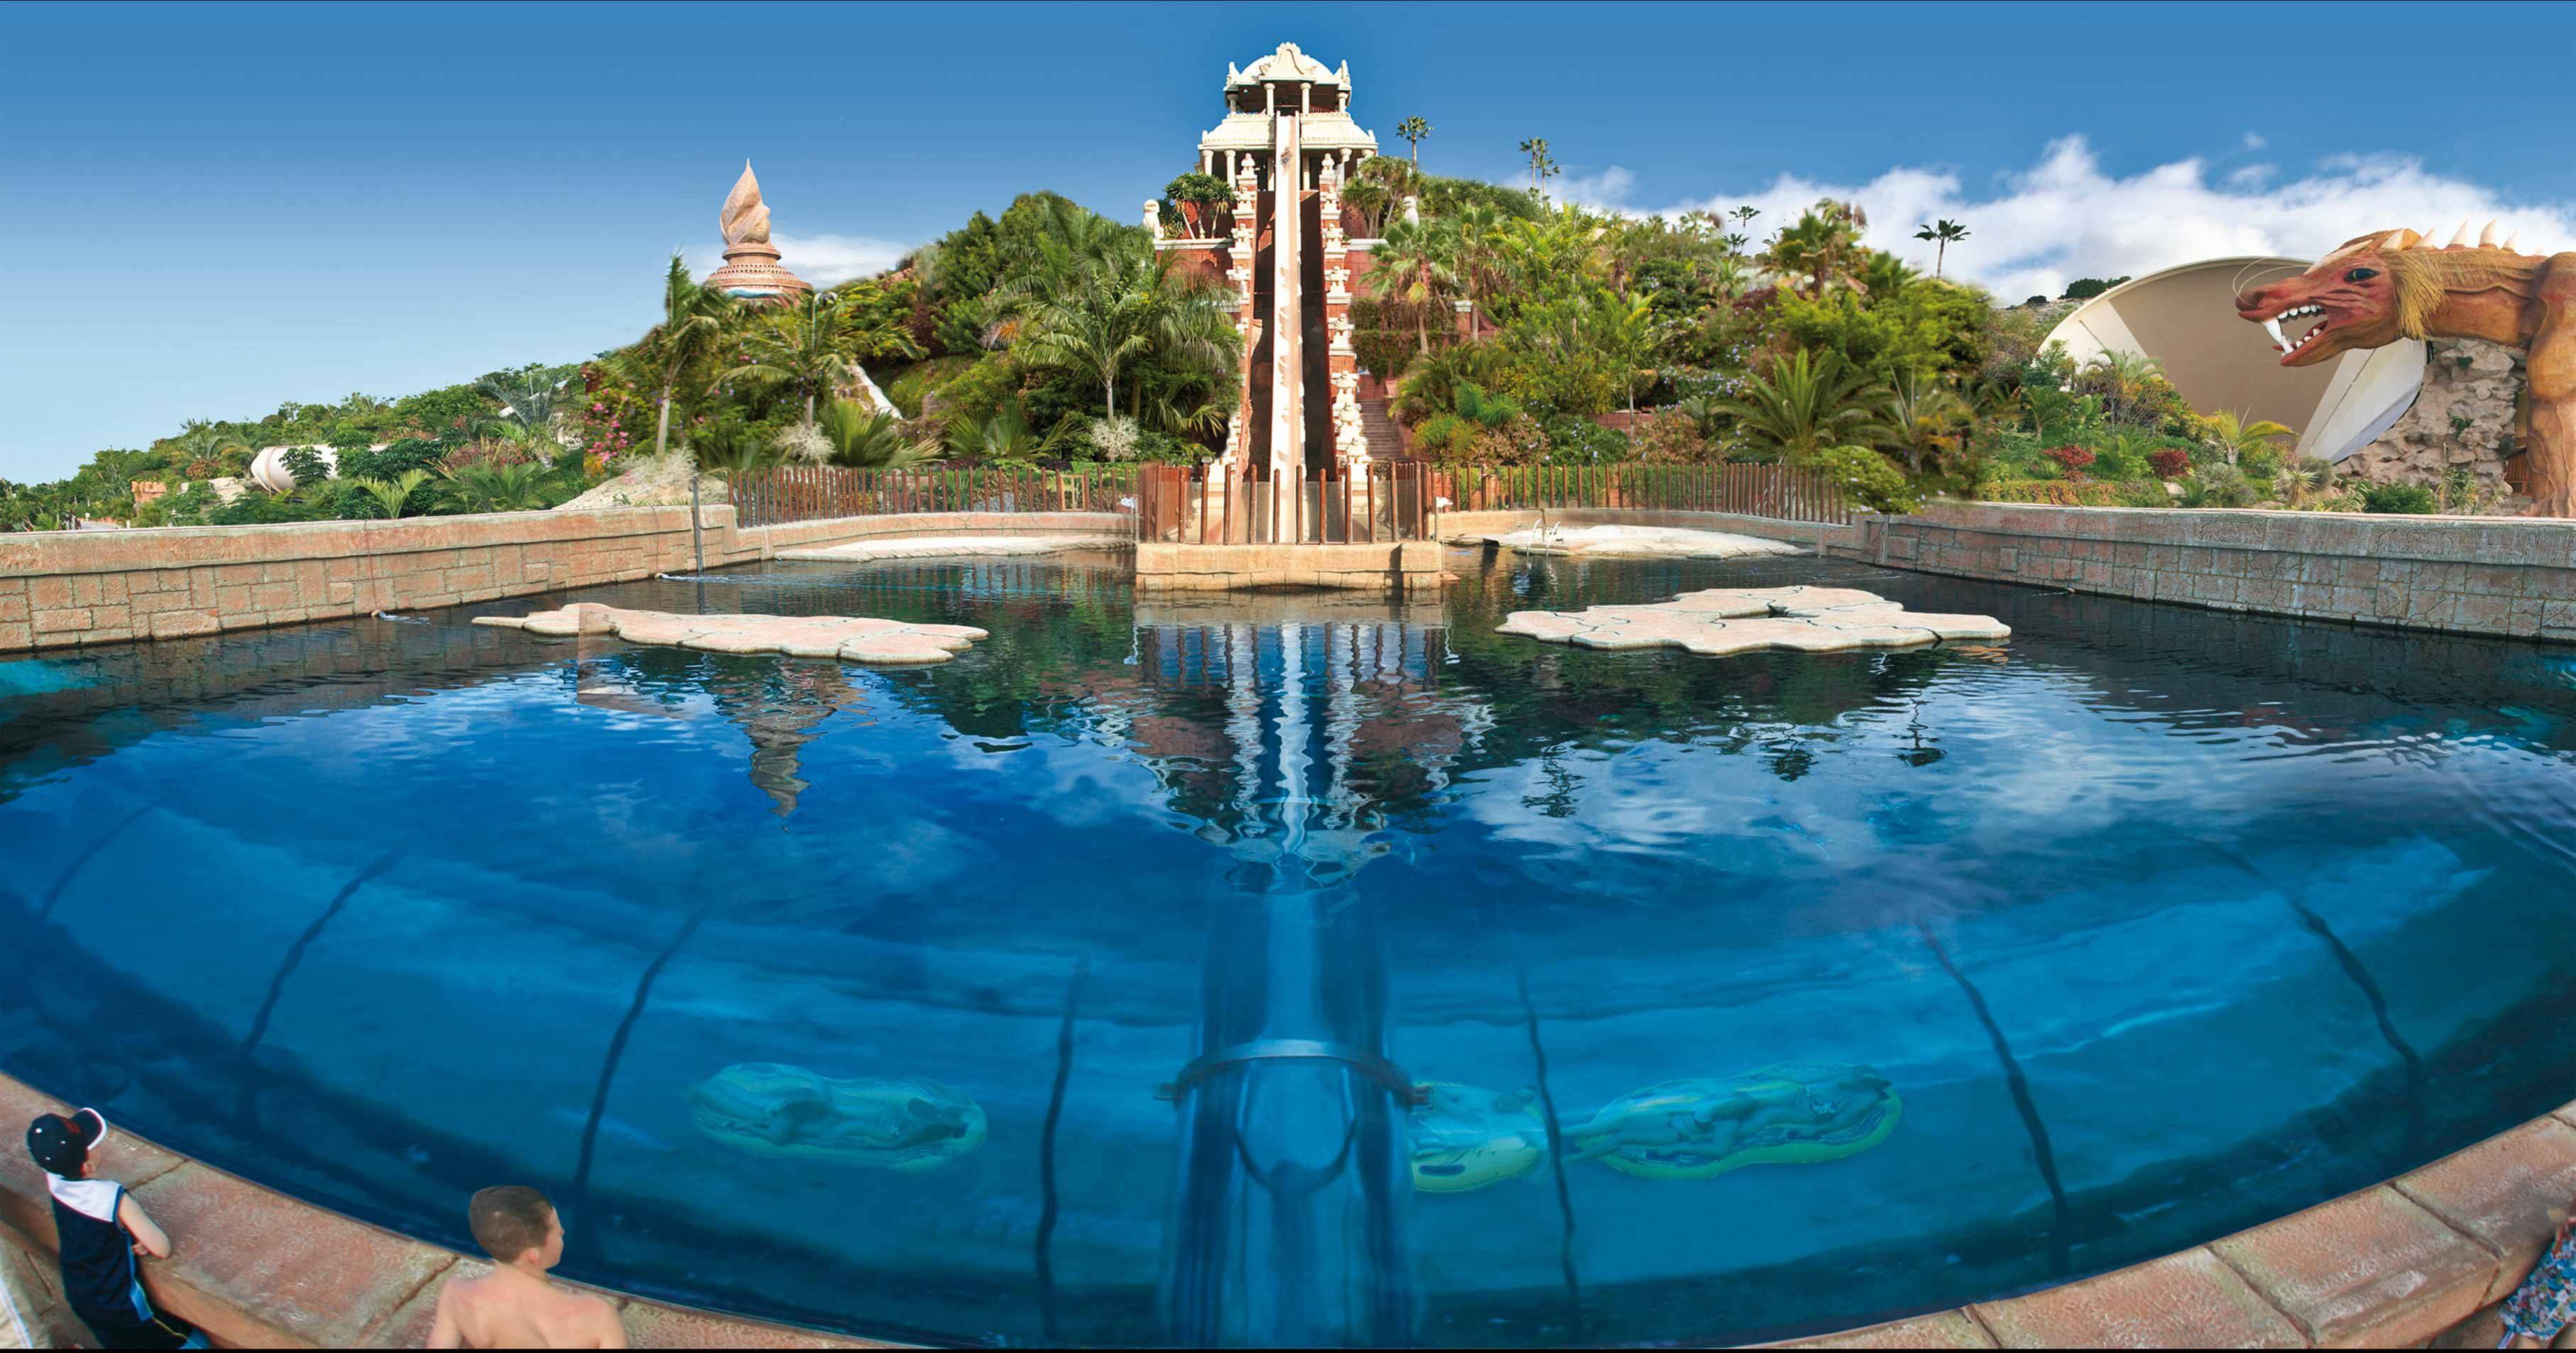 Сиам парк тенерифе? отличный аквапарк для взрослых и детей от «метр 10»!